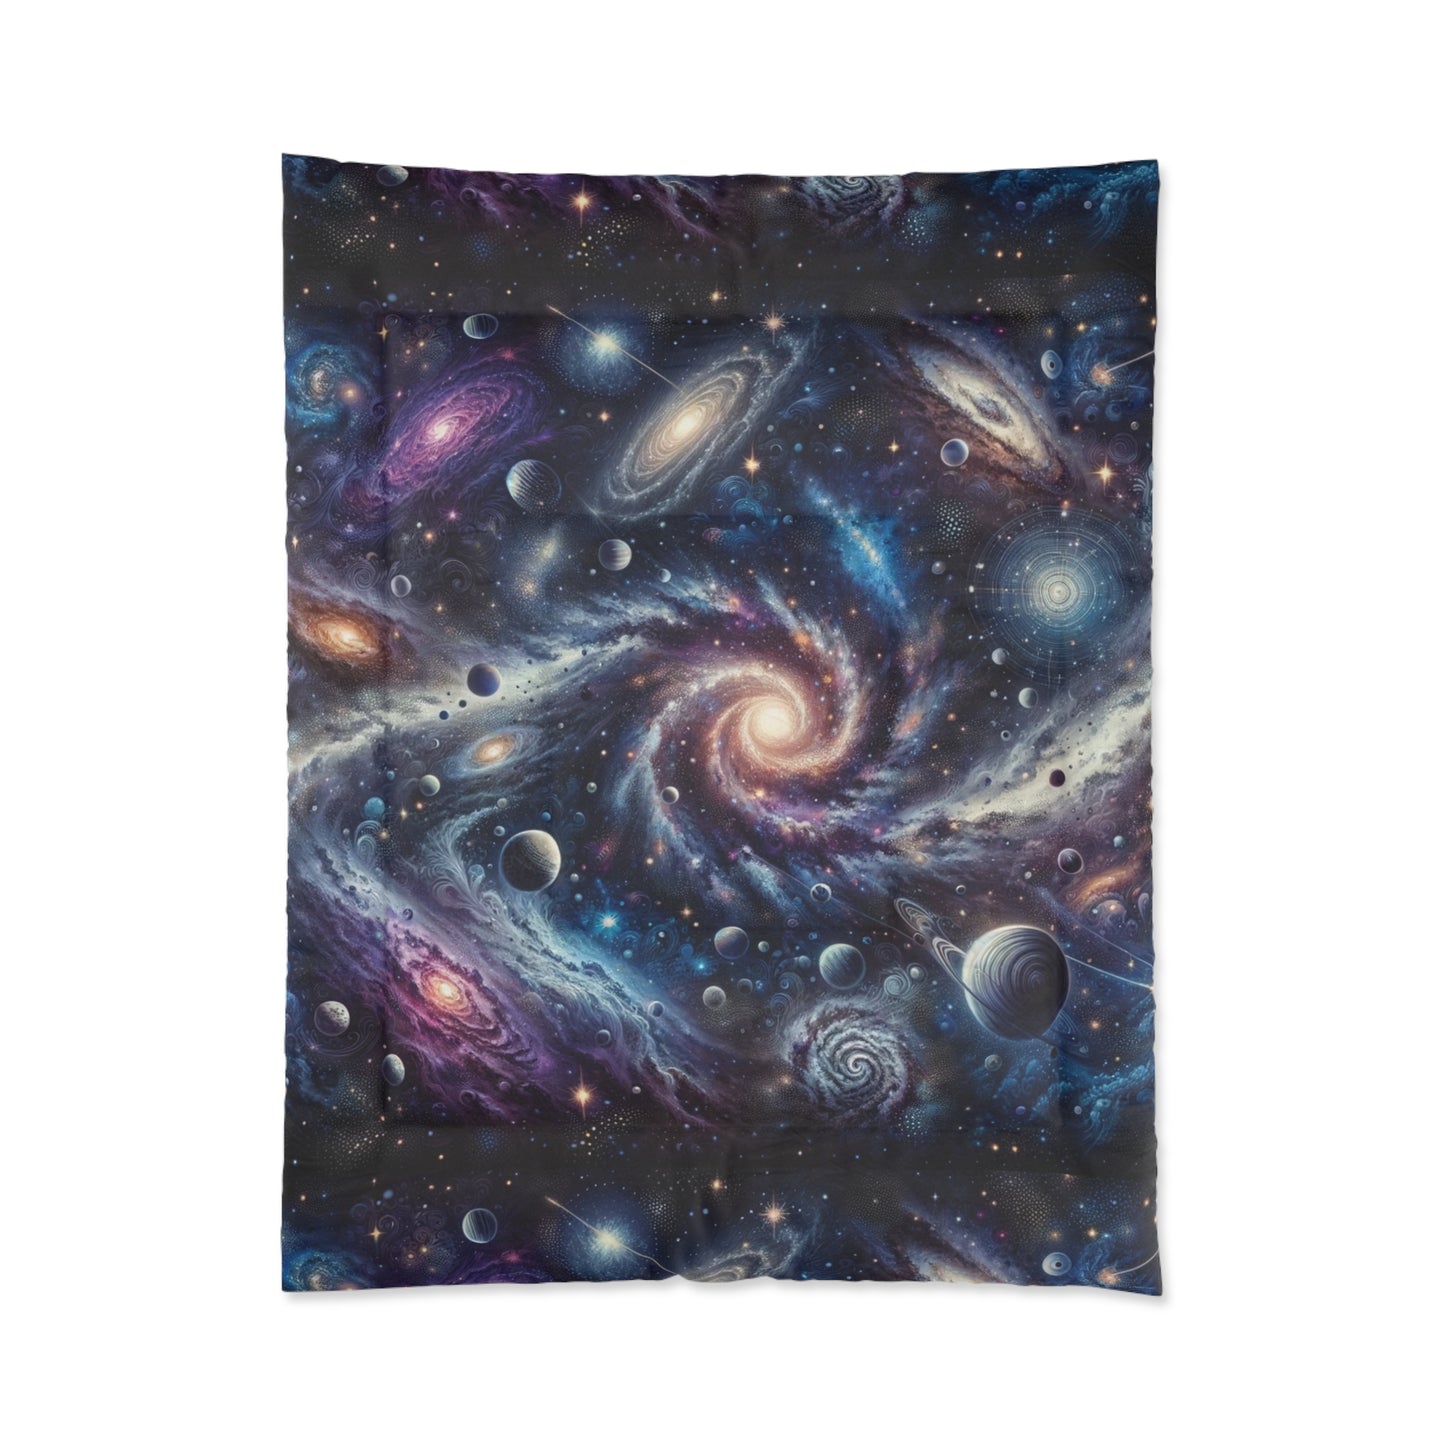 Cosmic Wonders Comforter